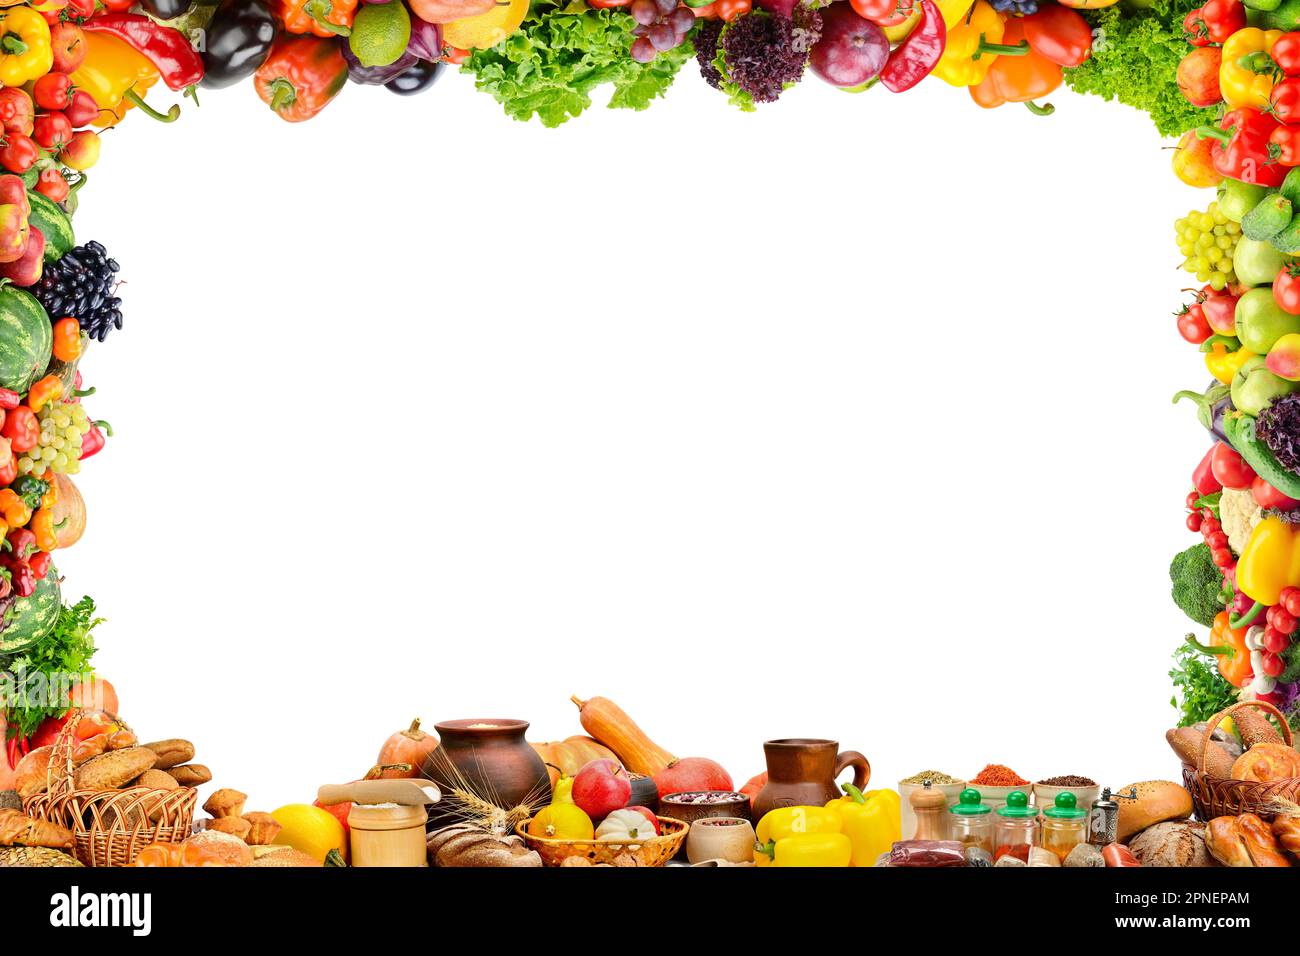 Fruits, légumes, pain, lait et autres produits alimentaires dans un cadre isolé sur fond blanc. Banque D'Images